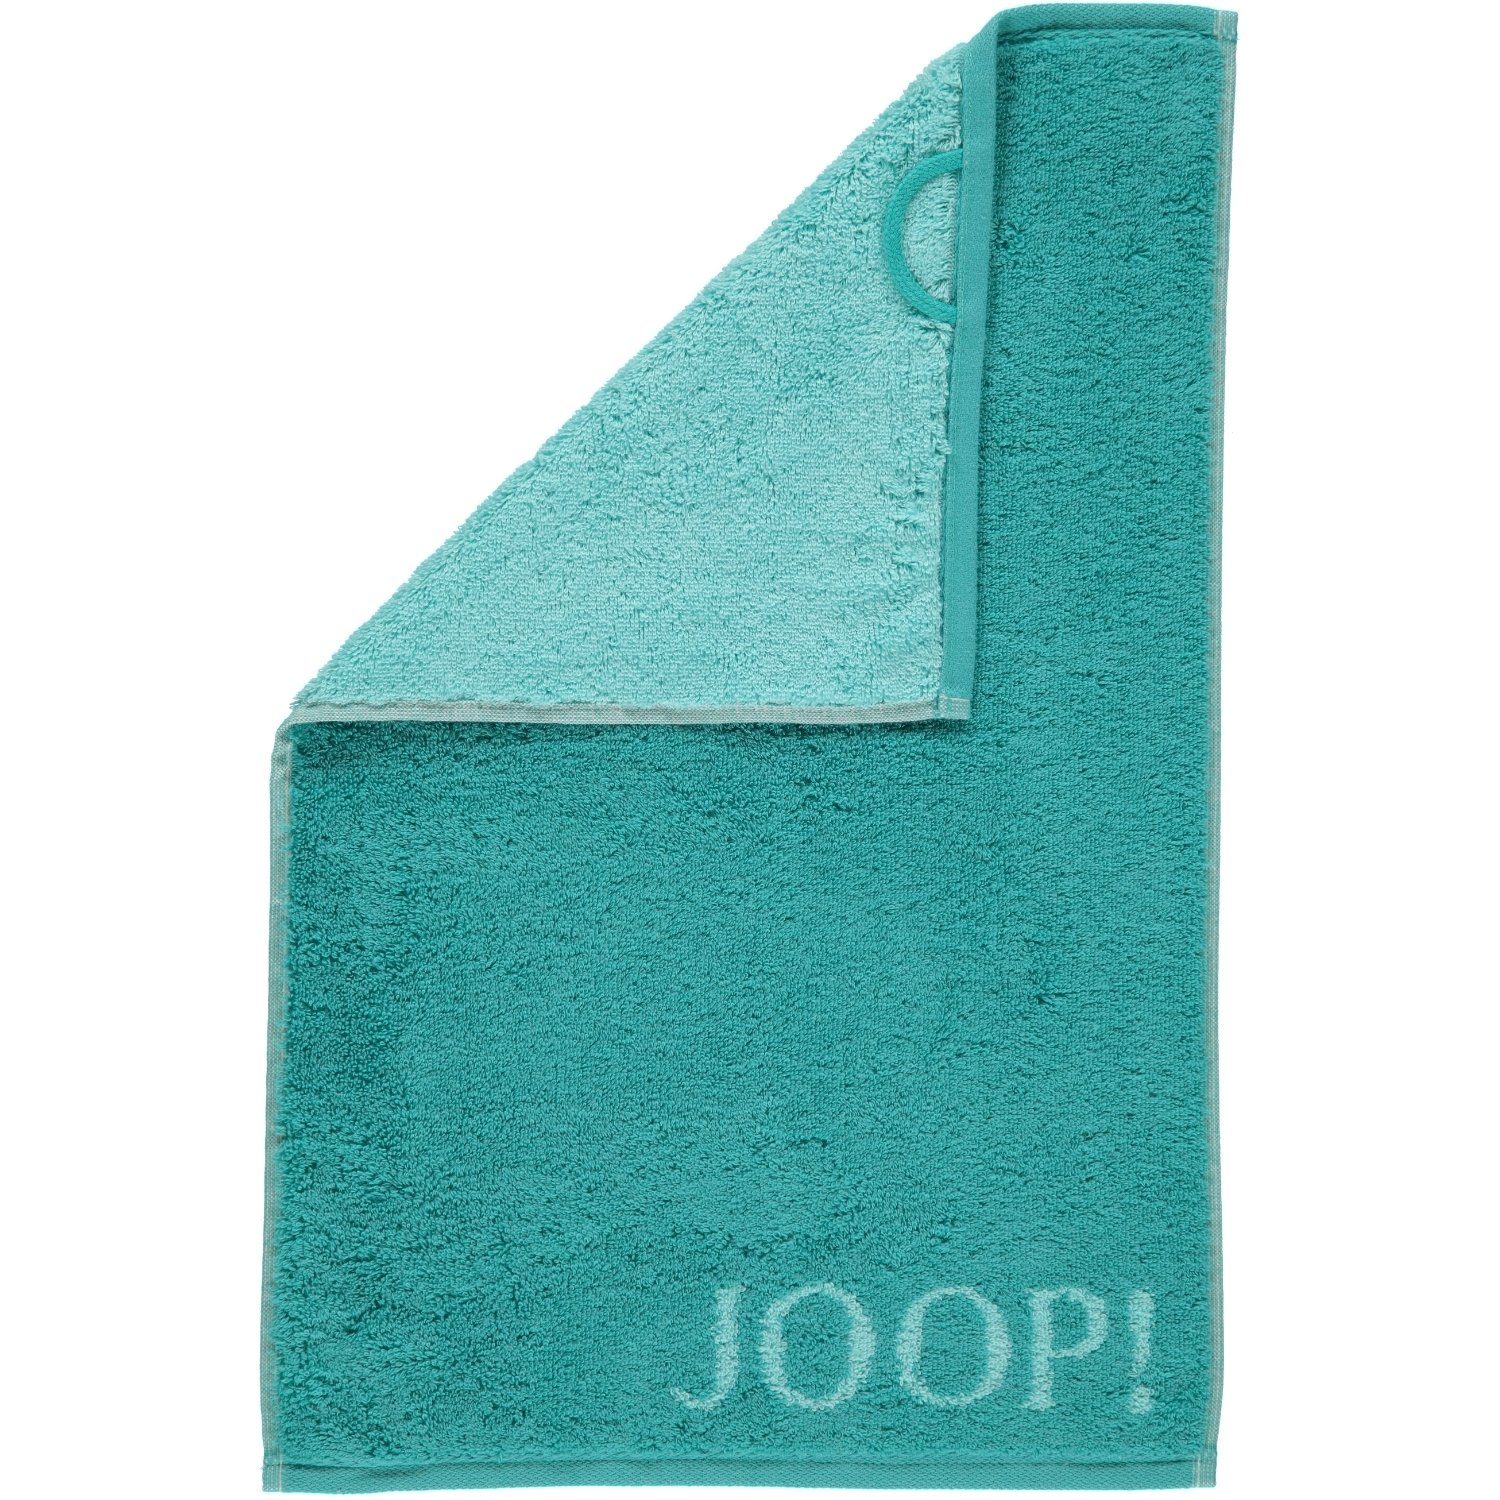 Joop! Handtücher Classic Doubleface - türkis 40 100% 1600, Baumwolle